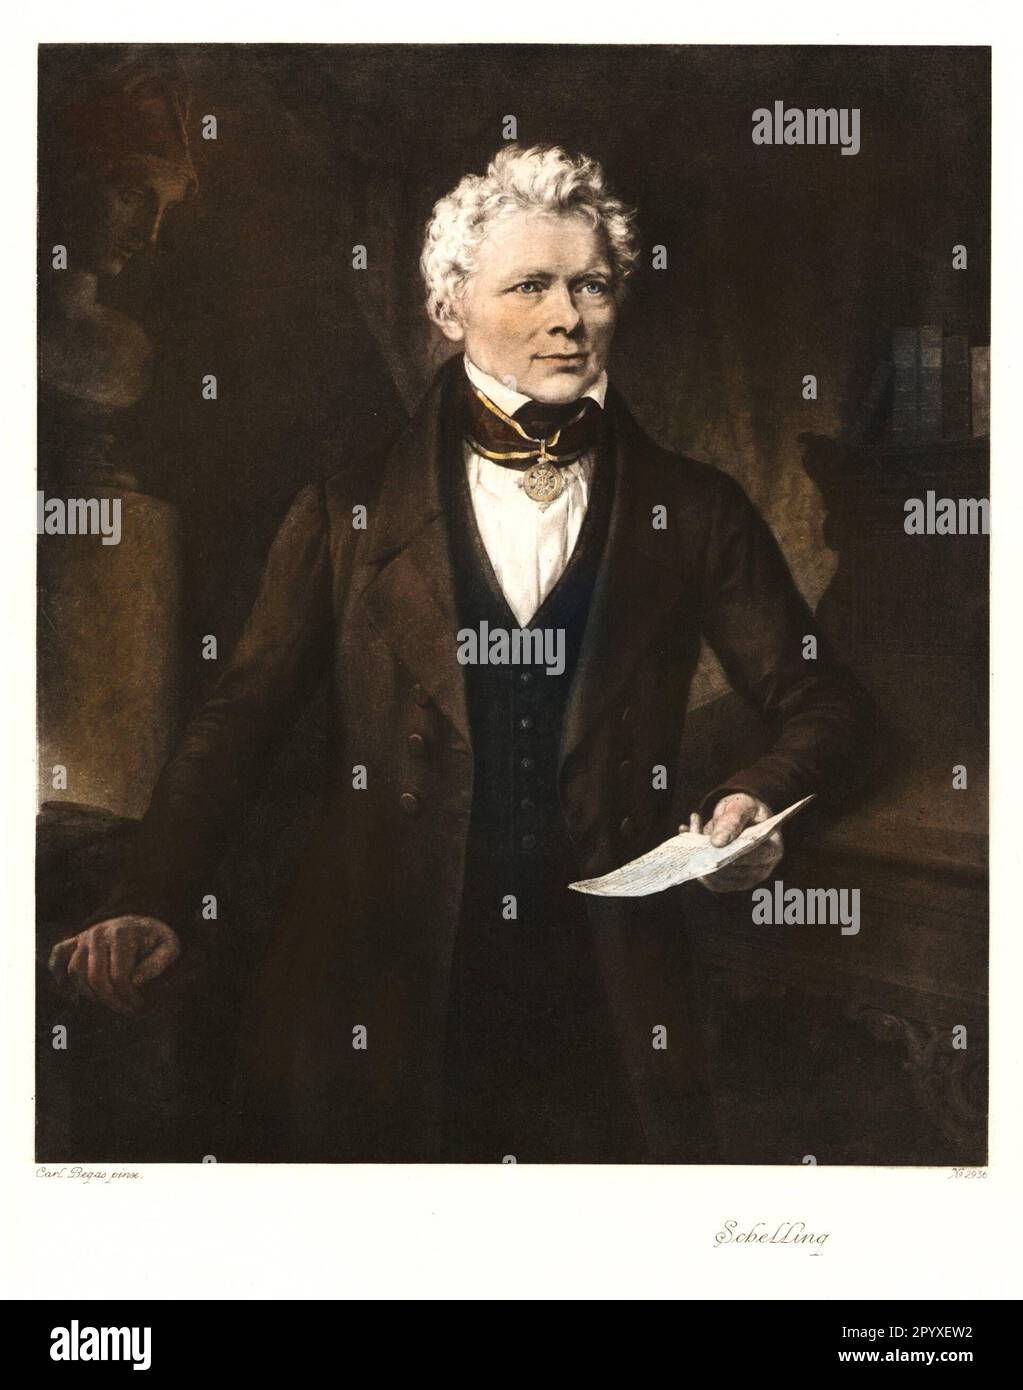 Friedrich Wilhelm Joseph von Schelling (1775-1854), philosophe allemand. Peinture par Karl Begas. Photo: Heliogravure, Corpus Imaginum, Collection Hanfstaengl. [traduction automatique] Banque D'Images